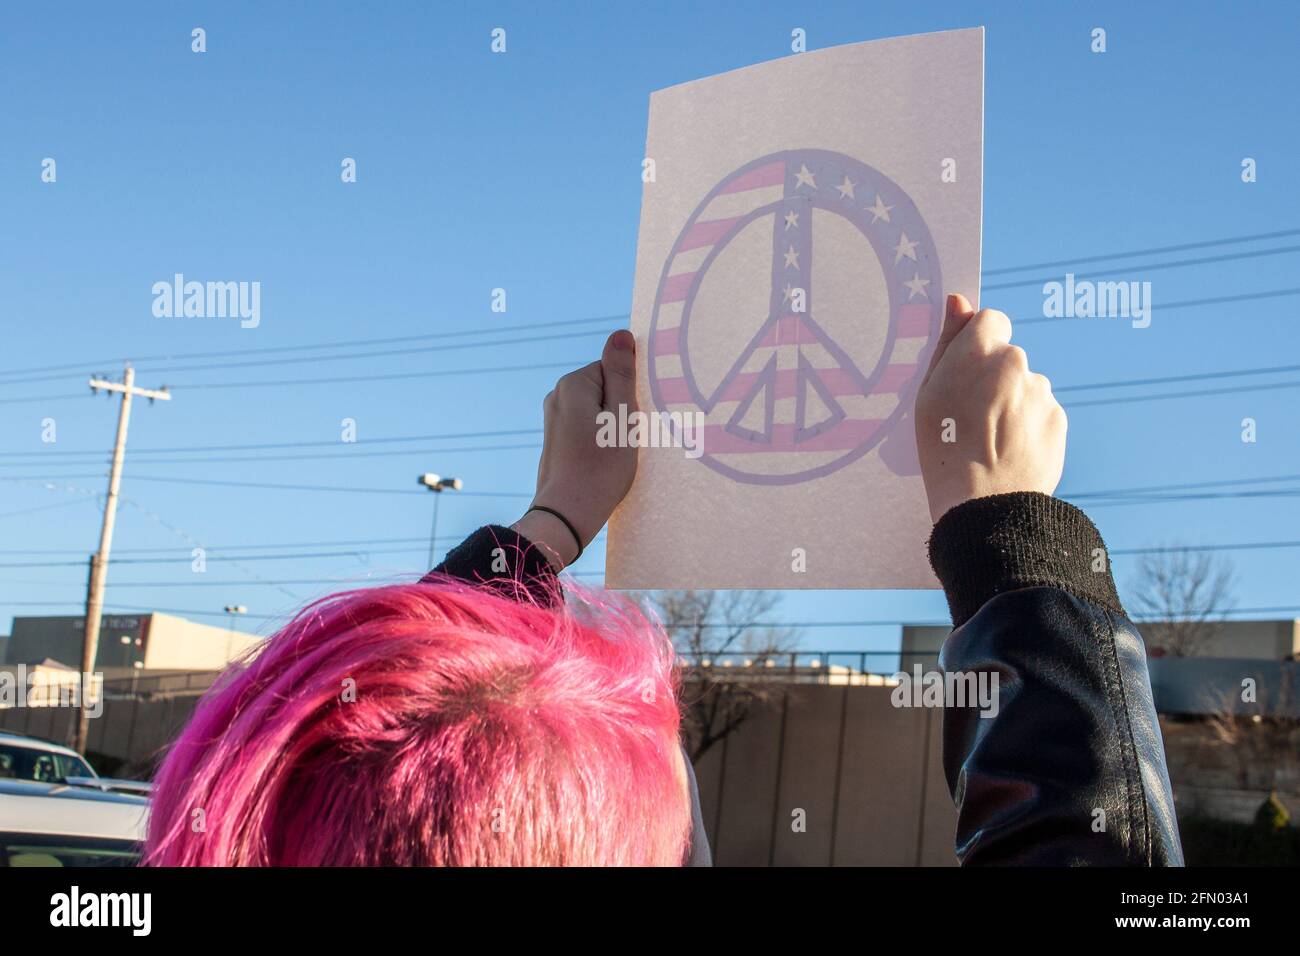 Protestler mit rosa Haaren hält handgemachte Frieden Symbol Zeichen - Bild von hinten sichtbar, wie Licht durch Zeichen scheint Stockfoto